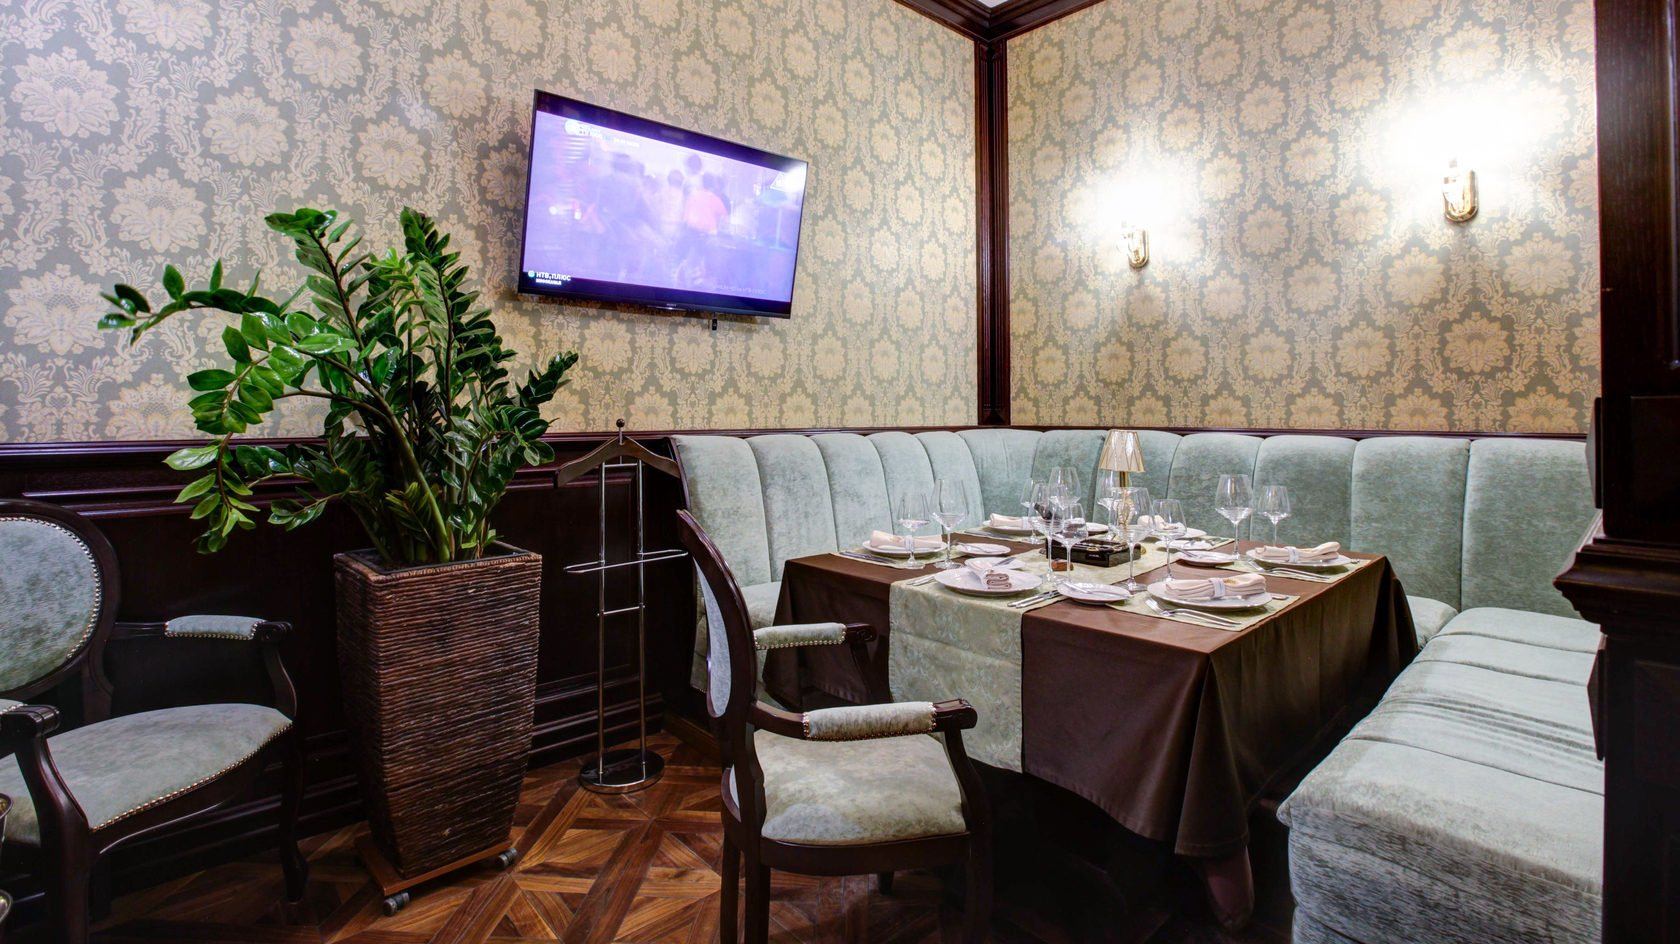 Рестораны с вип залами. Вип комната в ресторане. Вип зал в кафе. Ресторан с сигарной комнатой в Москве. Мебель для вип залов в ресторане.